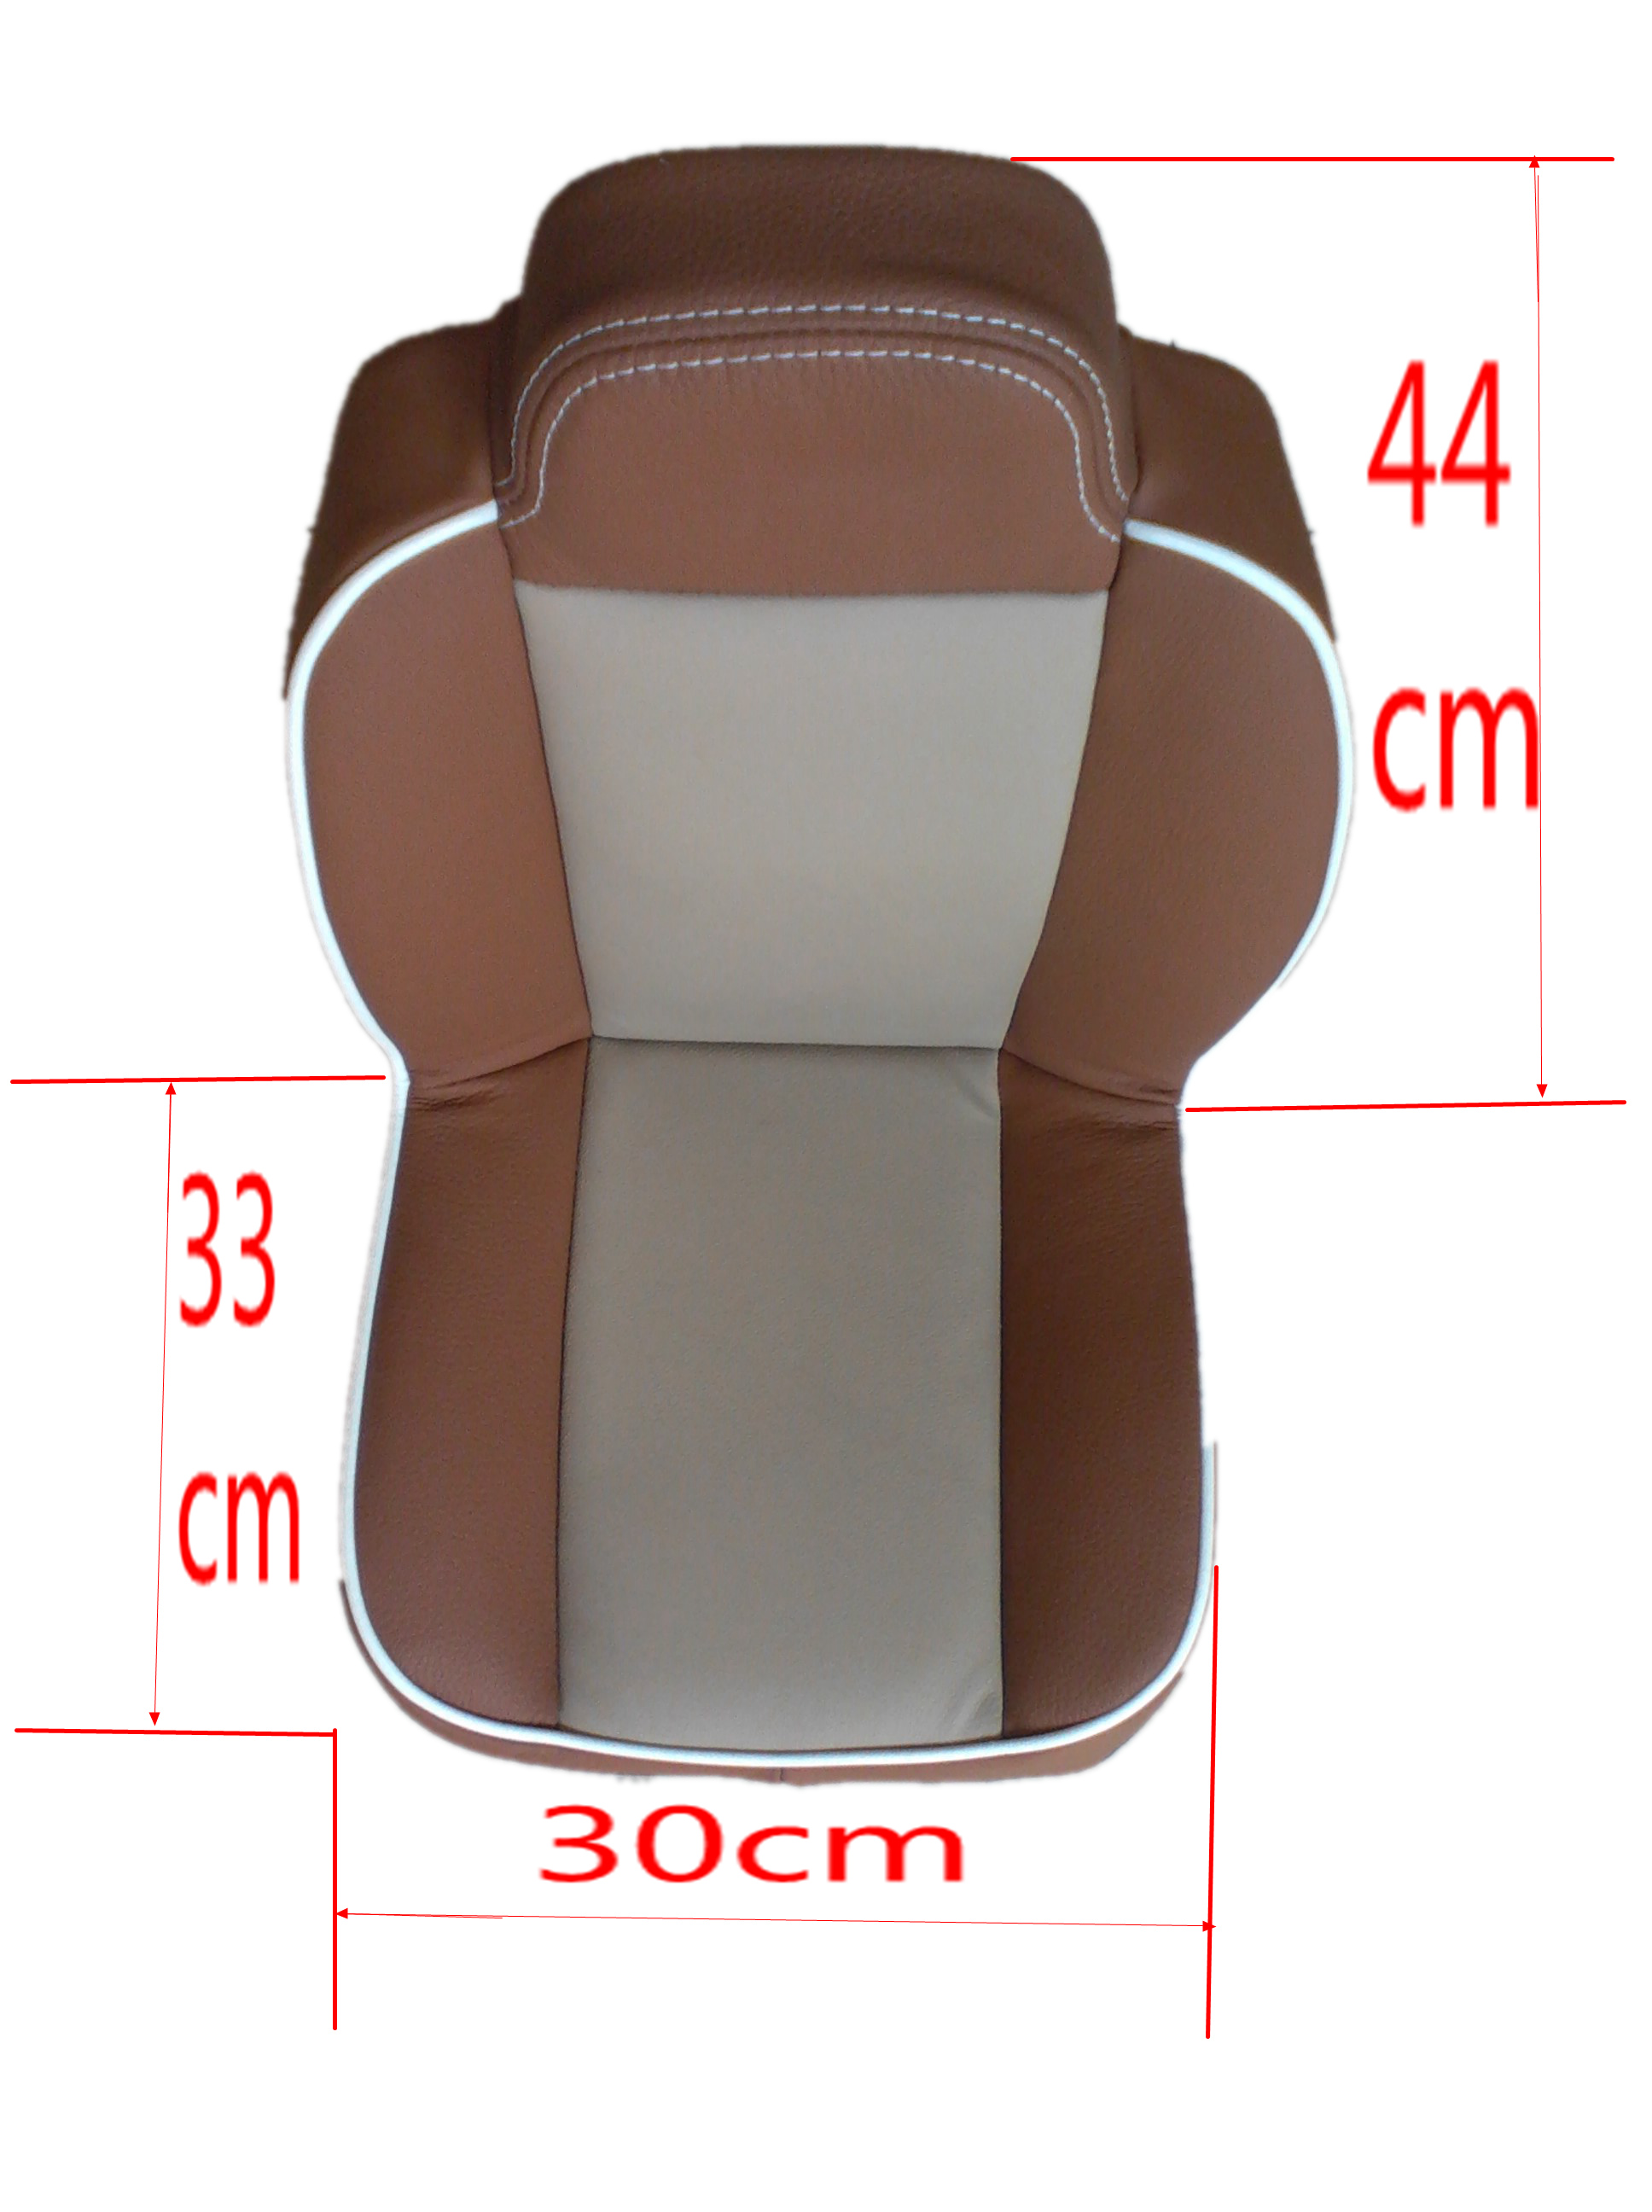 嘉捷多用途清洁剂真皮座椅汽车美容 洗车液皮革养护真皮座椅模型